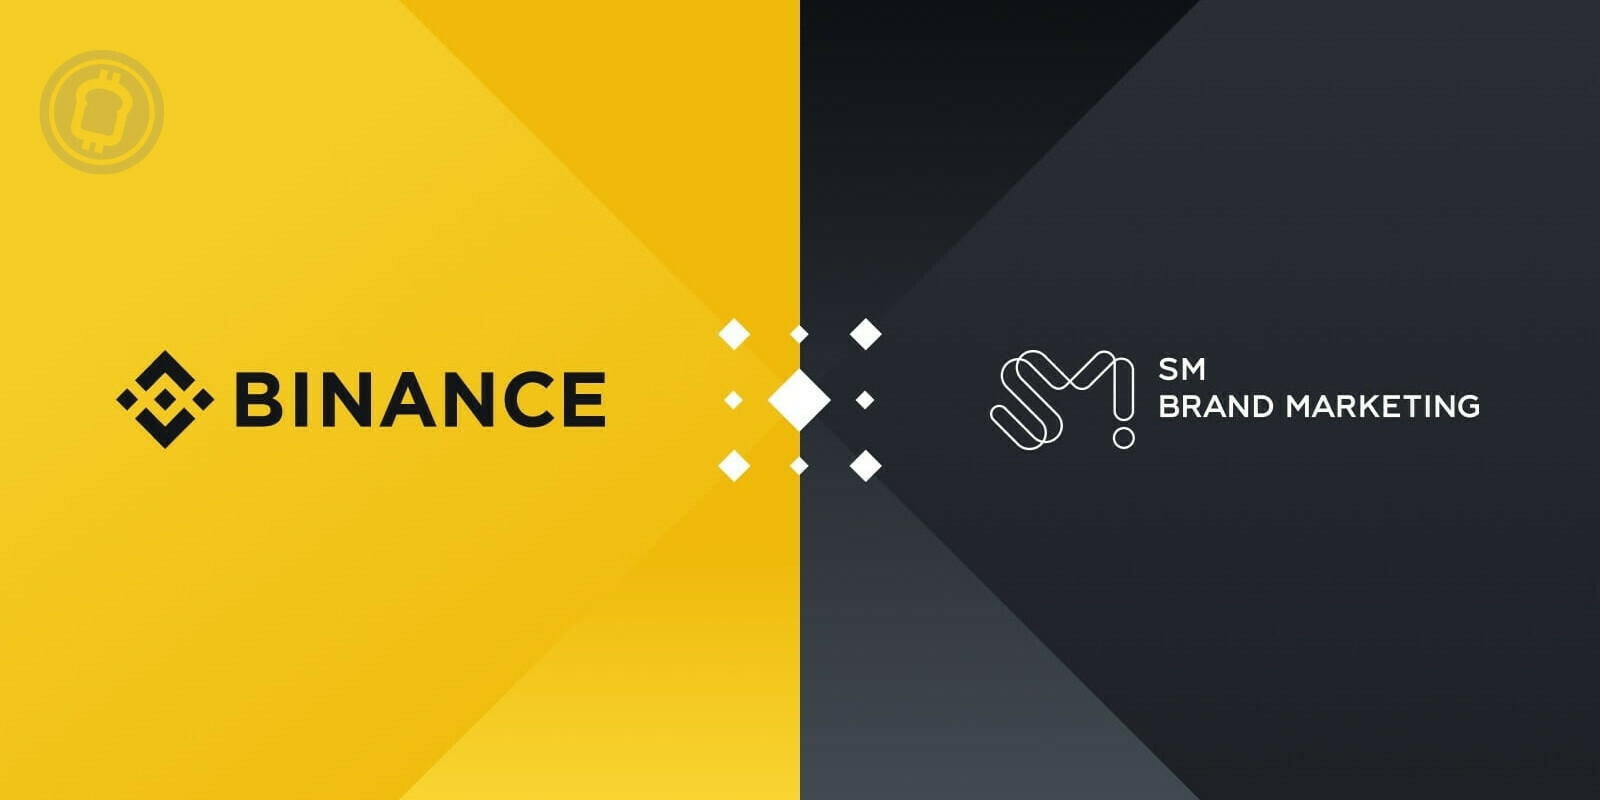 Binance s'offre un second partenariat dans l'industrie musicale sud-coréenne avec SM Brand Marketing